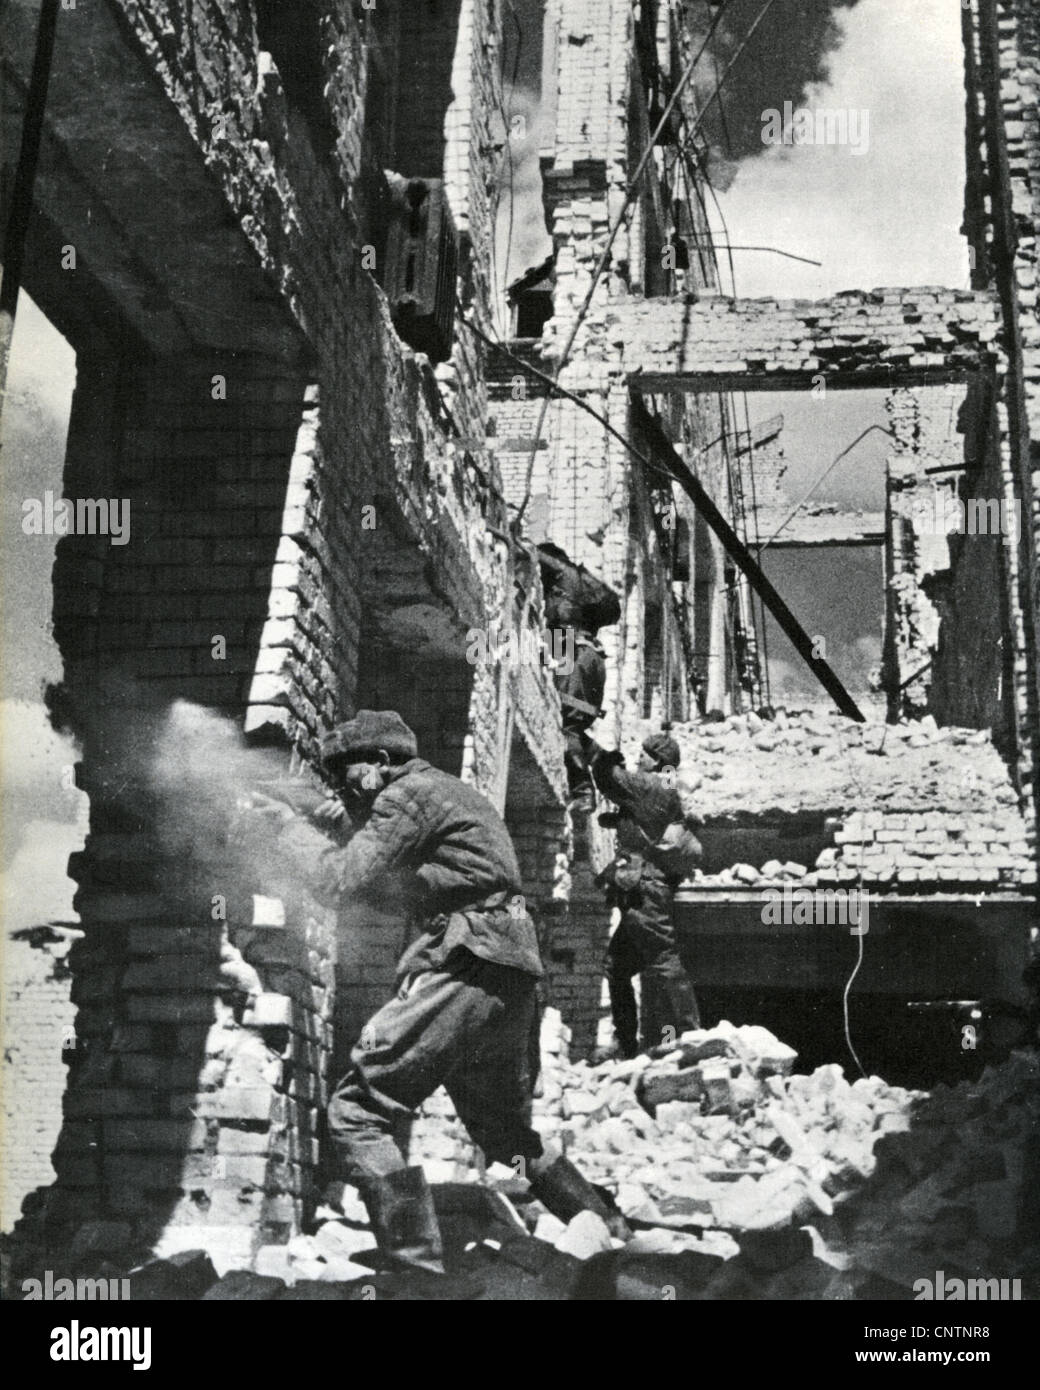 Bataille de Stalingrad 1942/3 des soldats de l'Armée rouge dans les ruines Banque D'Images